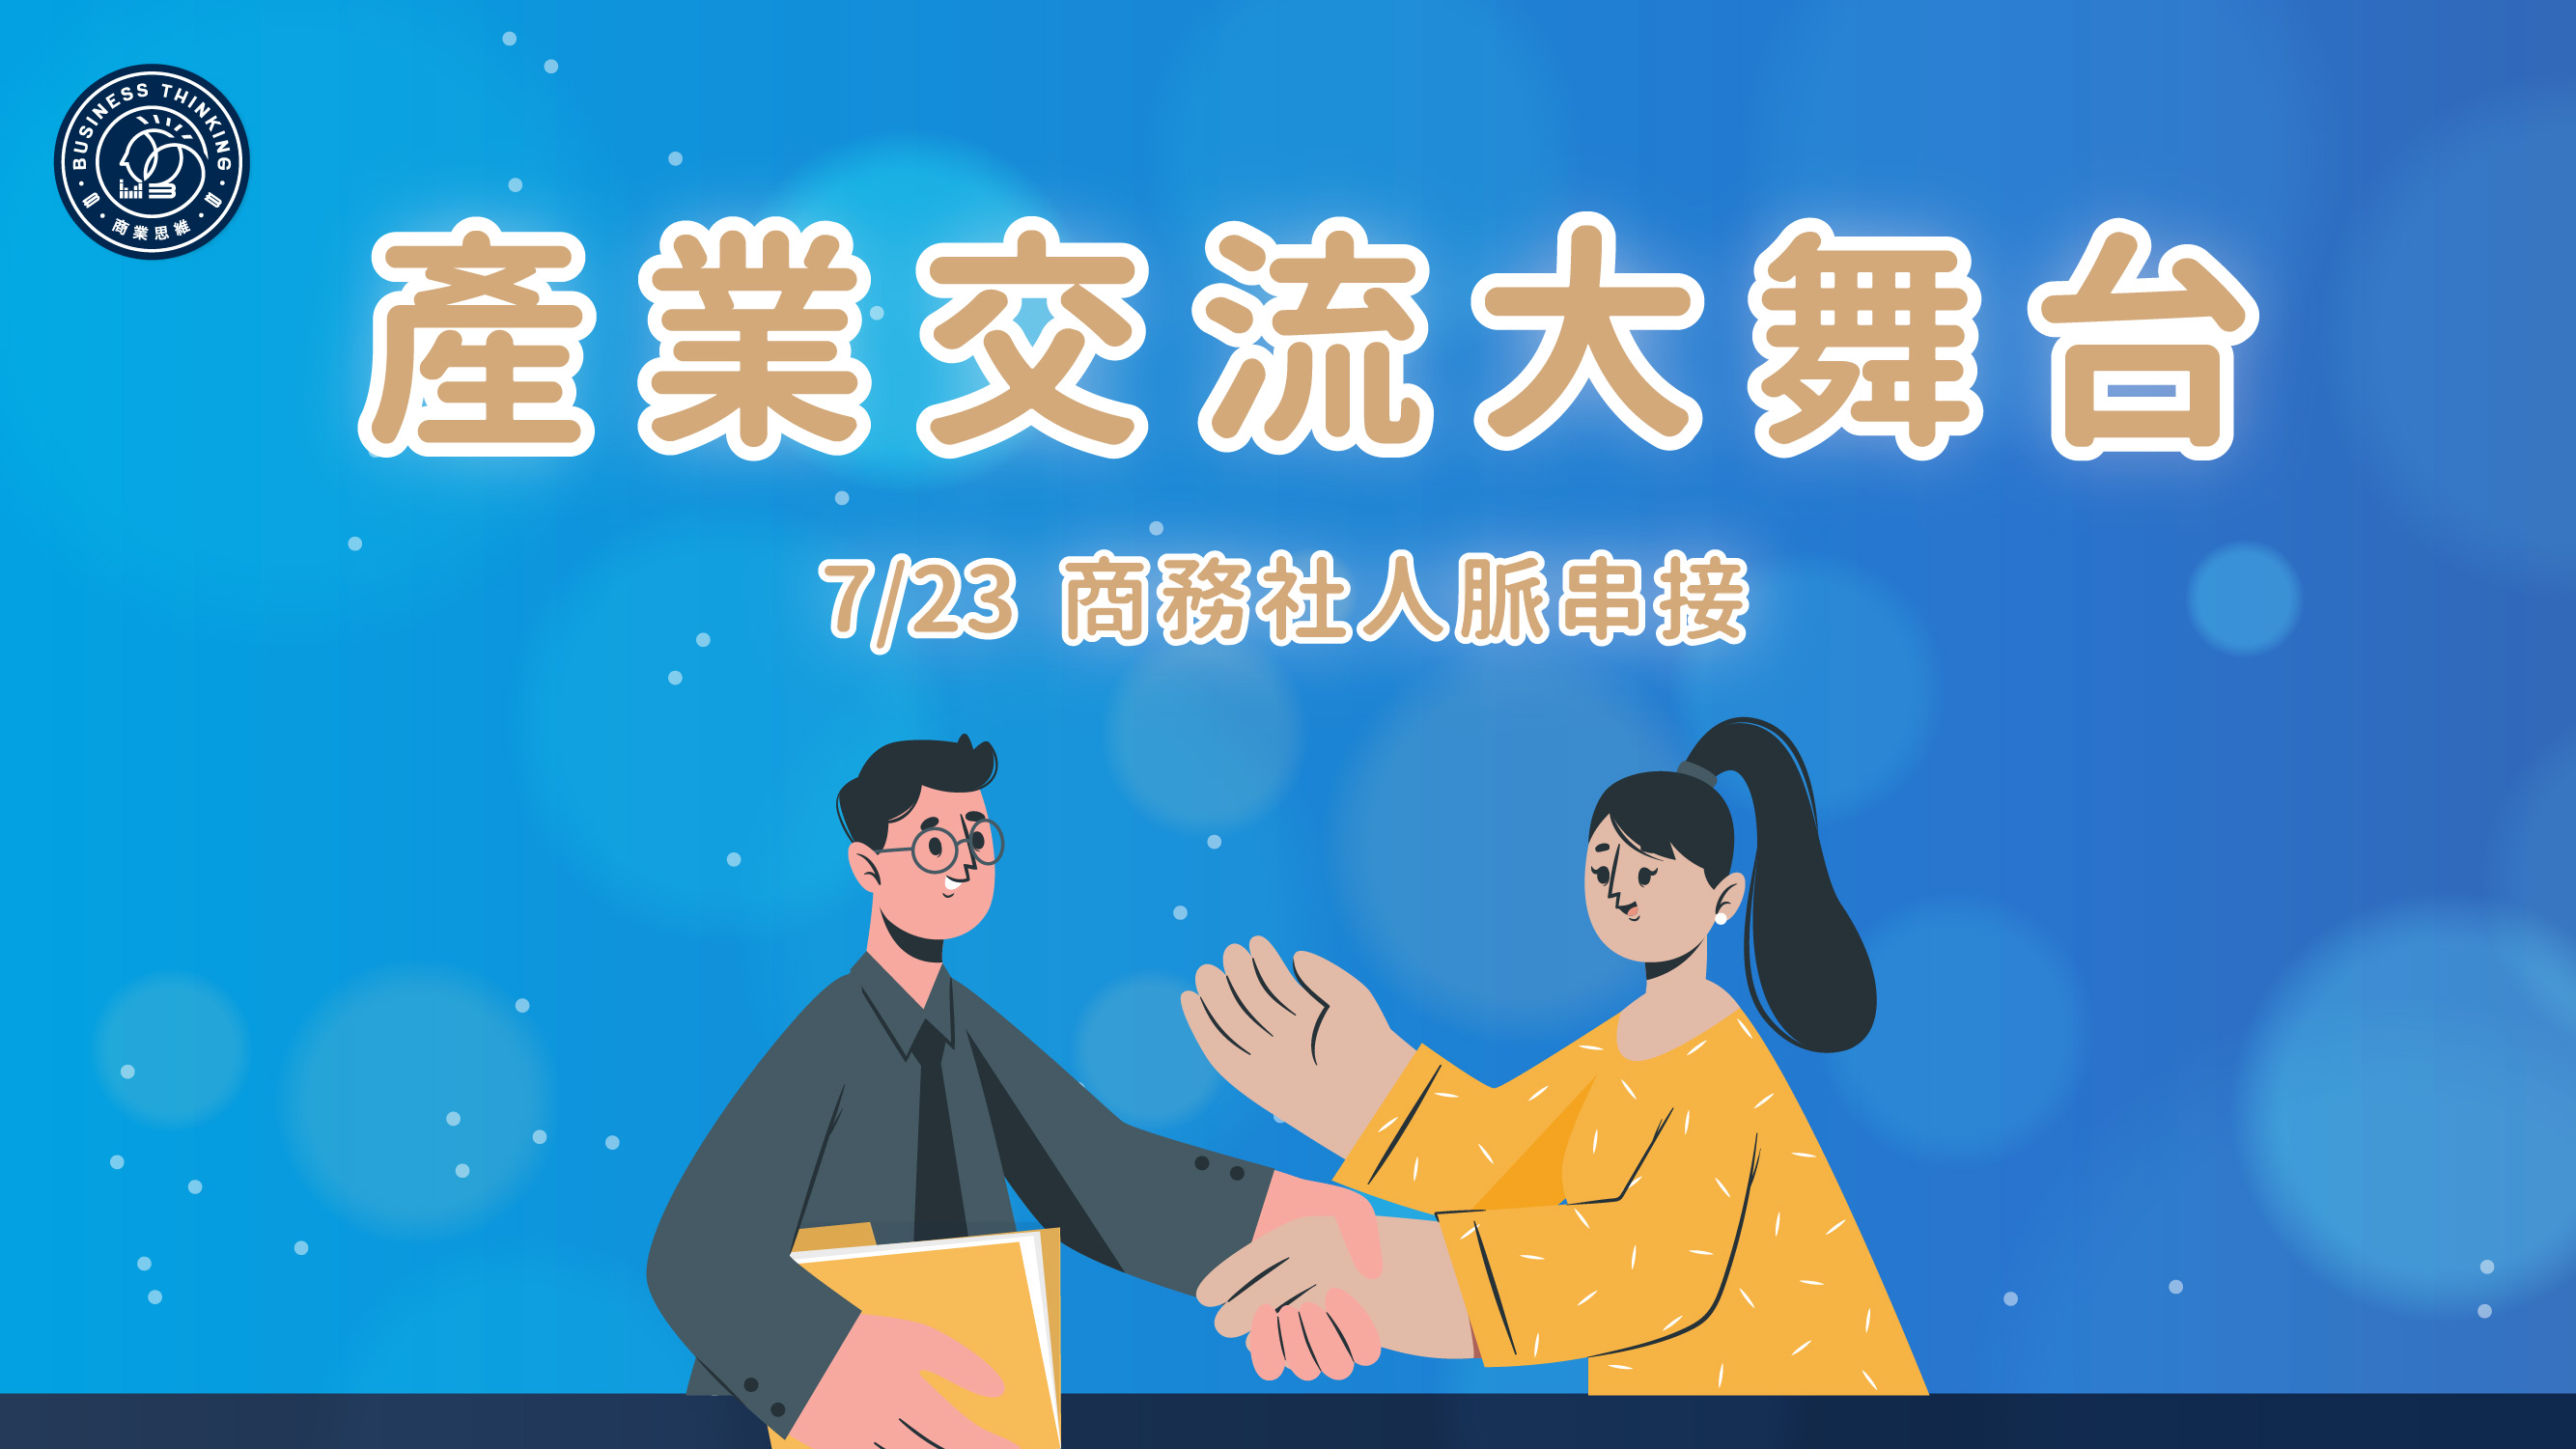 7/23 商務社 - 產業交流大舞台課程封面